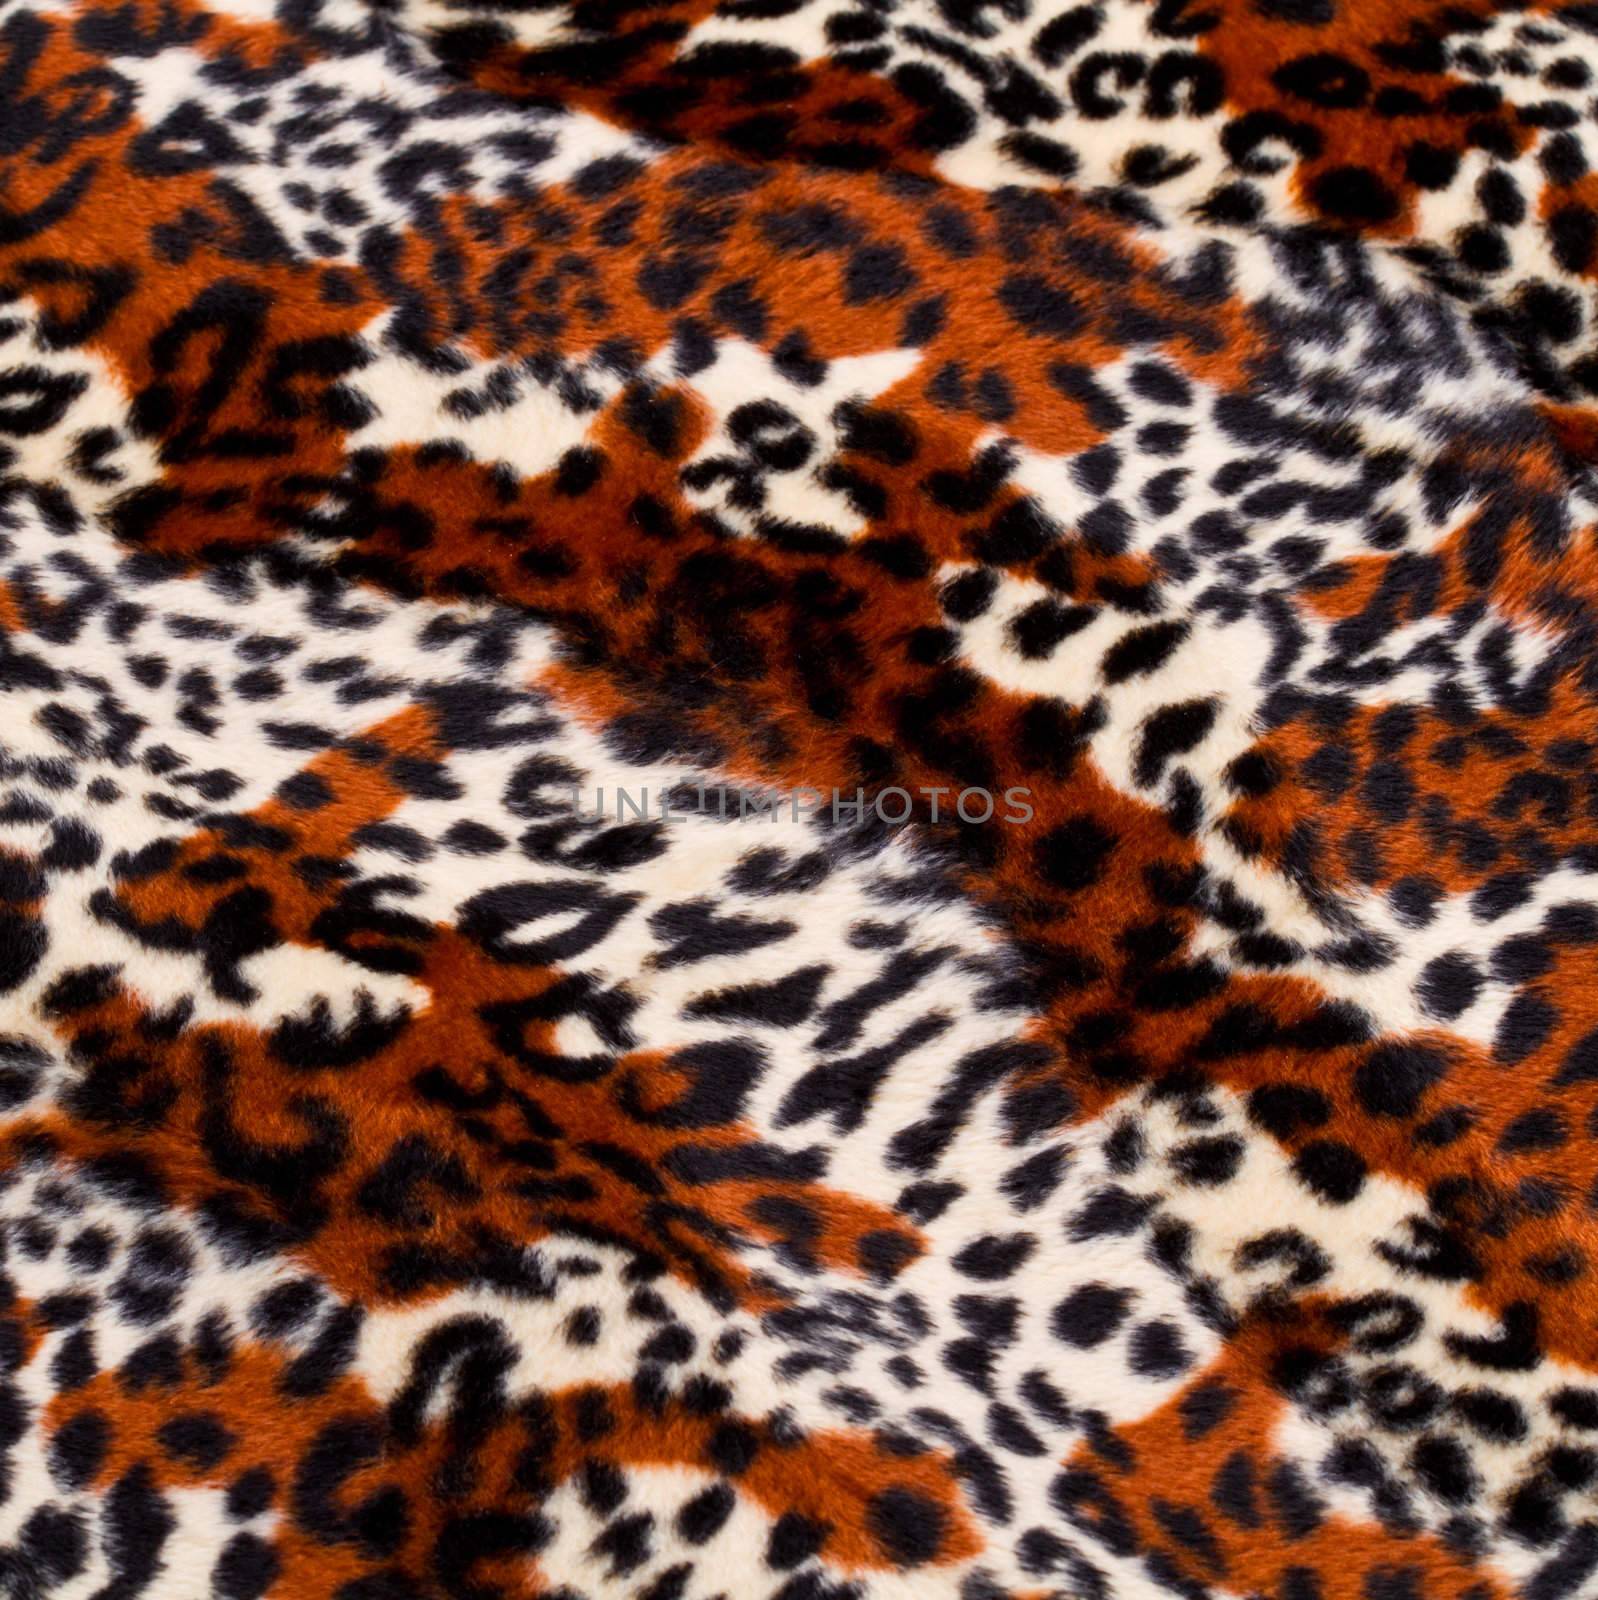  leopard skin pattern by lsantilli